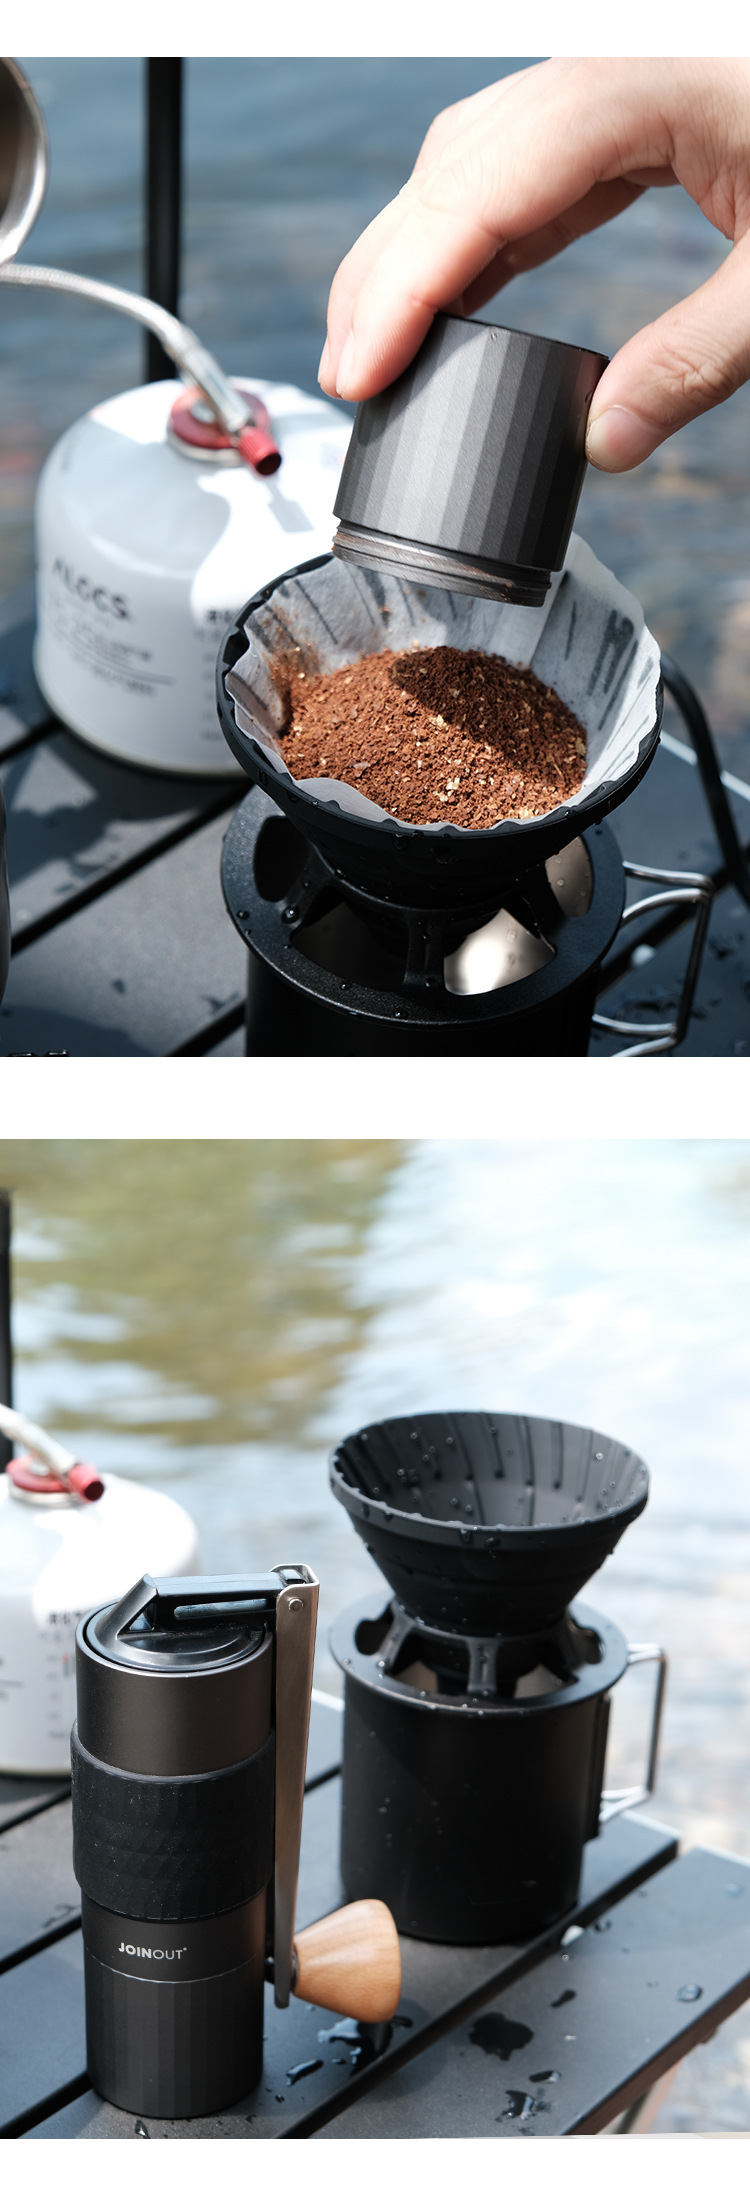 便携手提手冲咖啡套装两用折叠V60滤杯户外咖啡装备露营旅行装